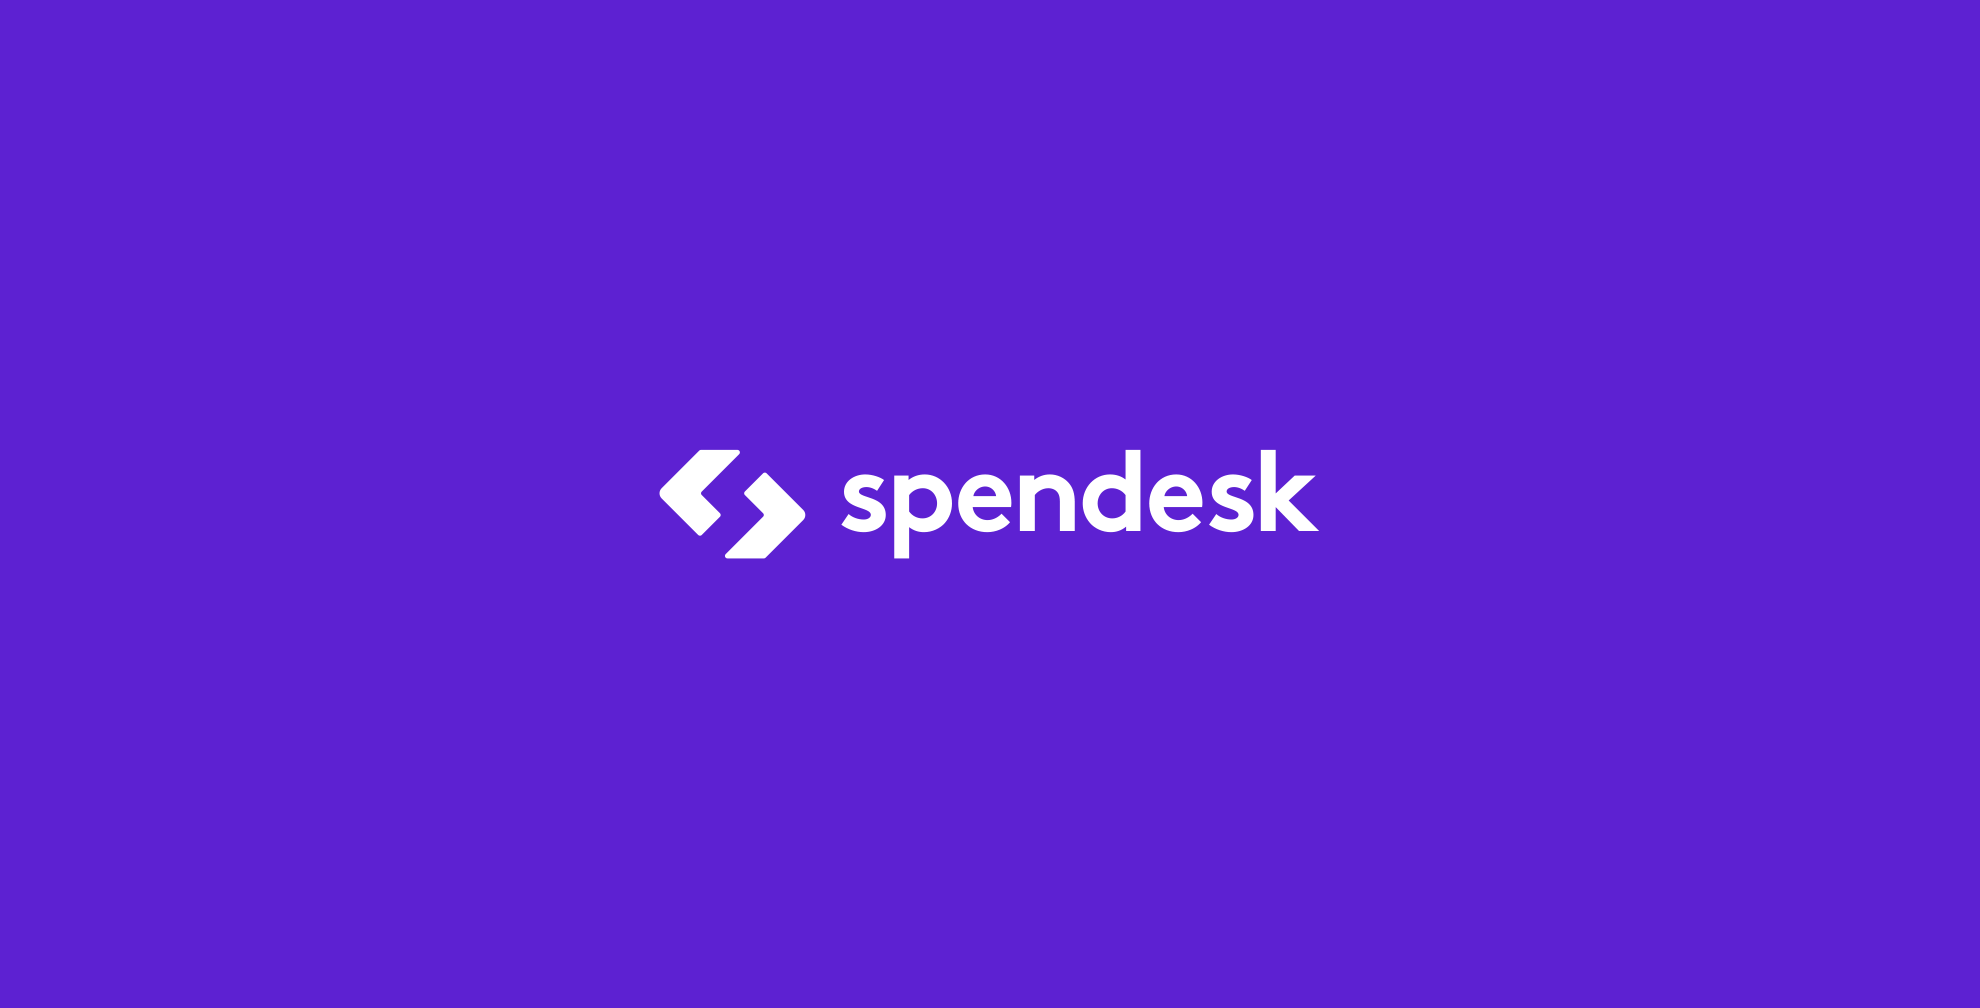 Spendesk lève 35M€ pour simplifier la gestion des dépenses d’entreprise